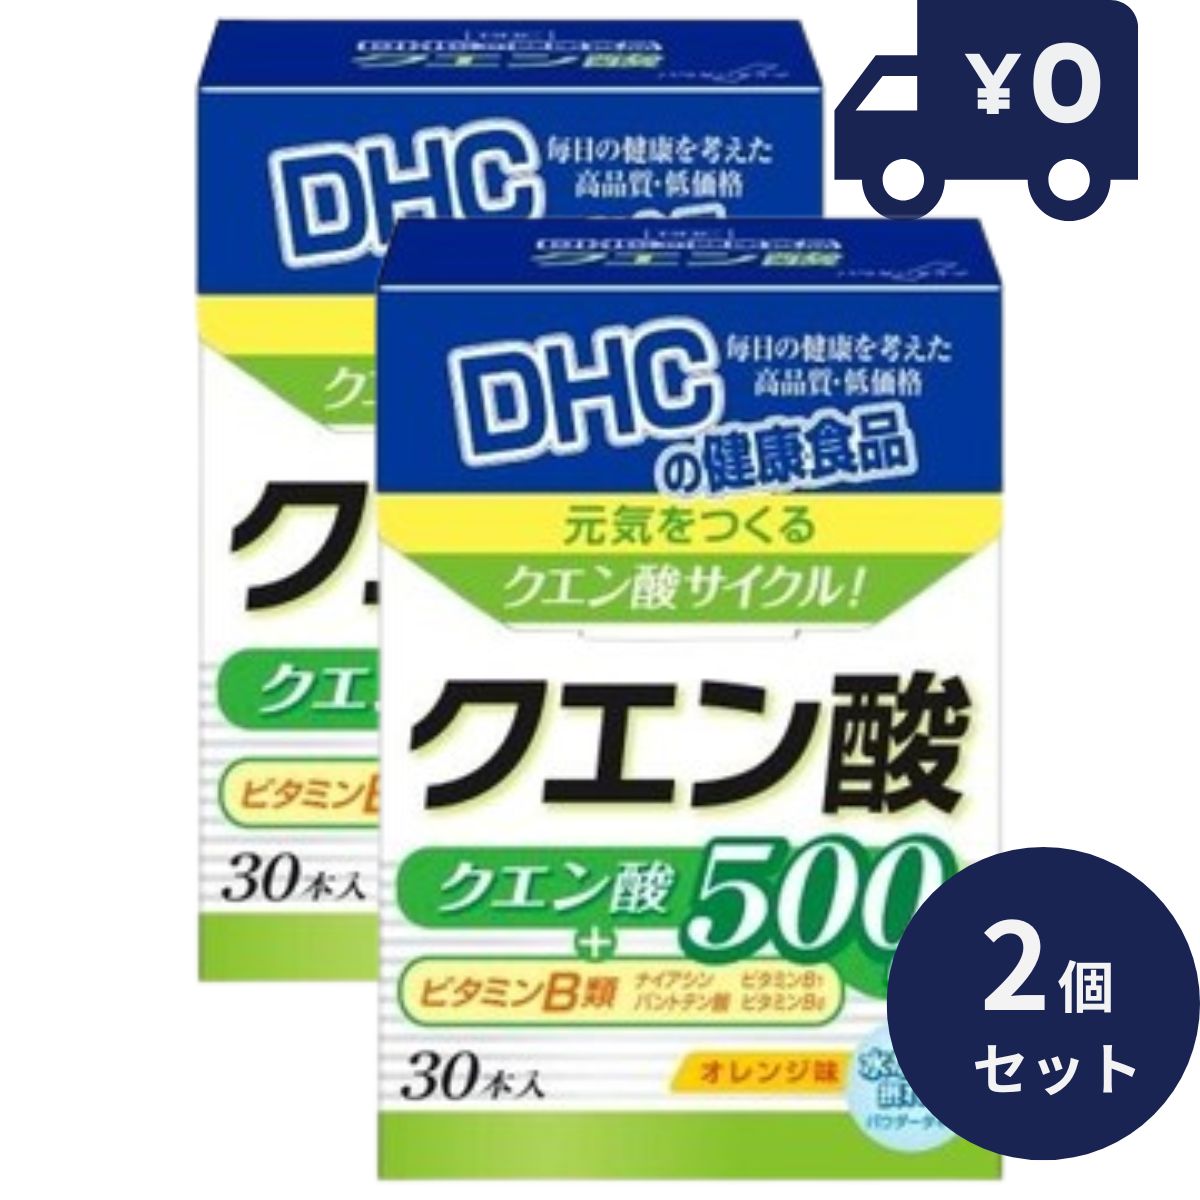 DHC クエン酸 30包 30日分 2個セット ディーエイチシー サプリメント 健康食品 人気 ナイアシン ビタミンB6 ビタミンB1